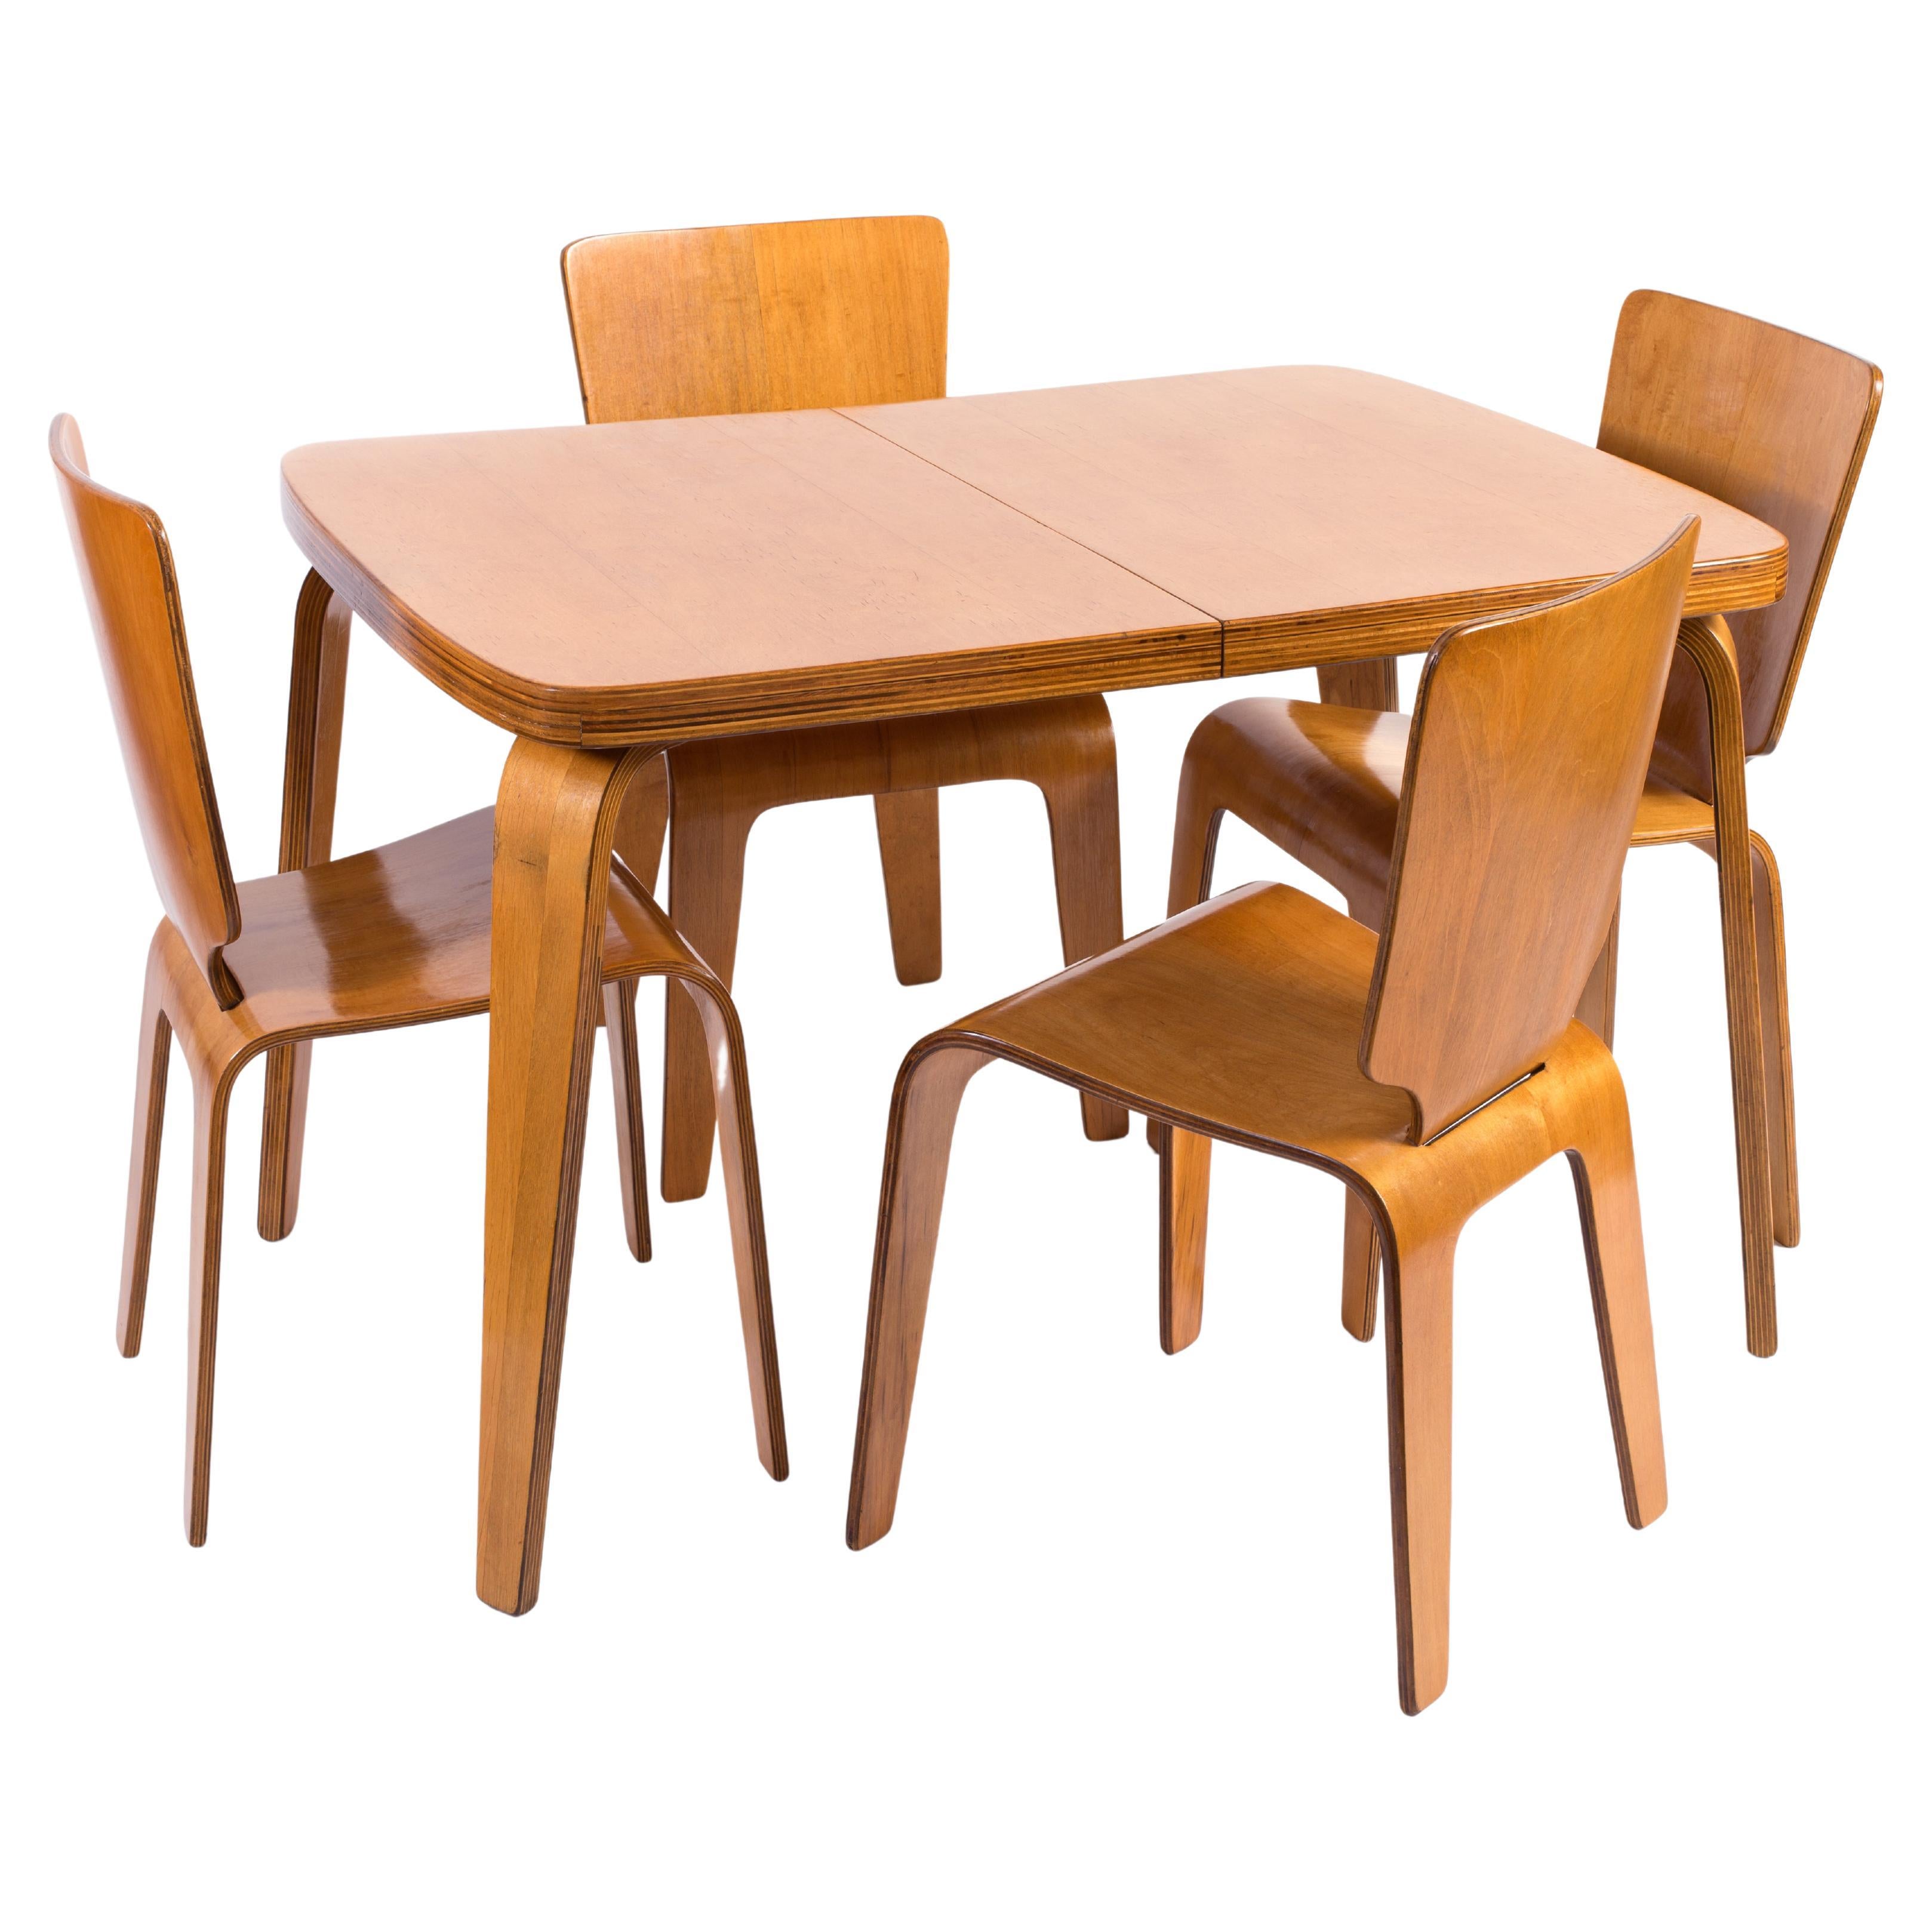 Thaden-Jordan 1940's Herbert Von Thaden Mid-Century Modern Table/Chairs 5pc Set